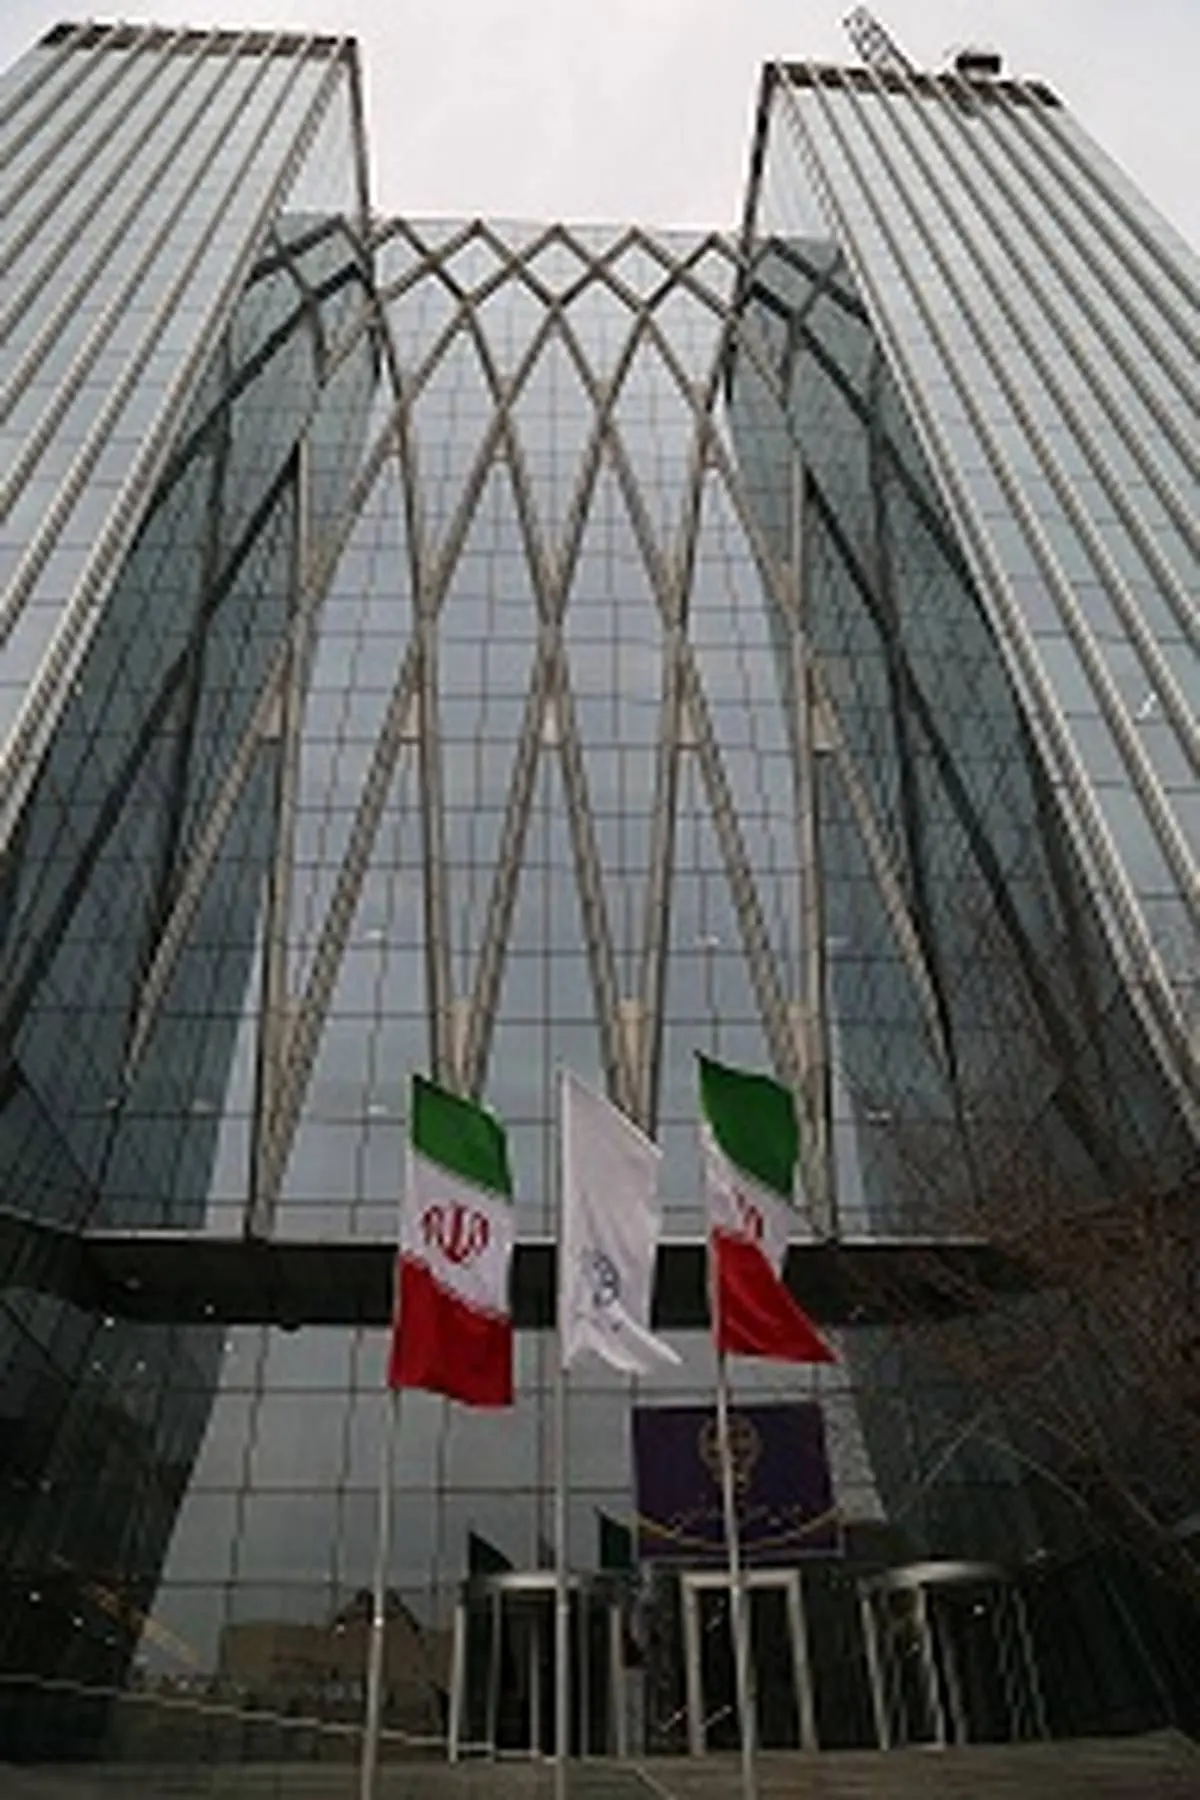  معامله بیش از 52541 میلیارد ریال اوراق بهادار در بورس تهران 